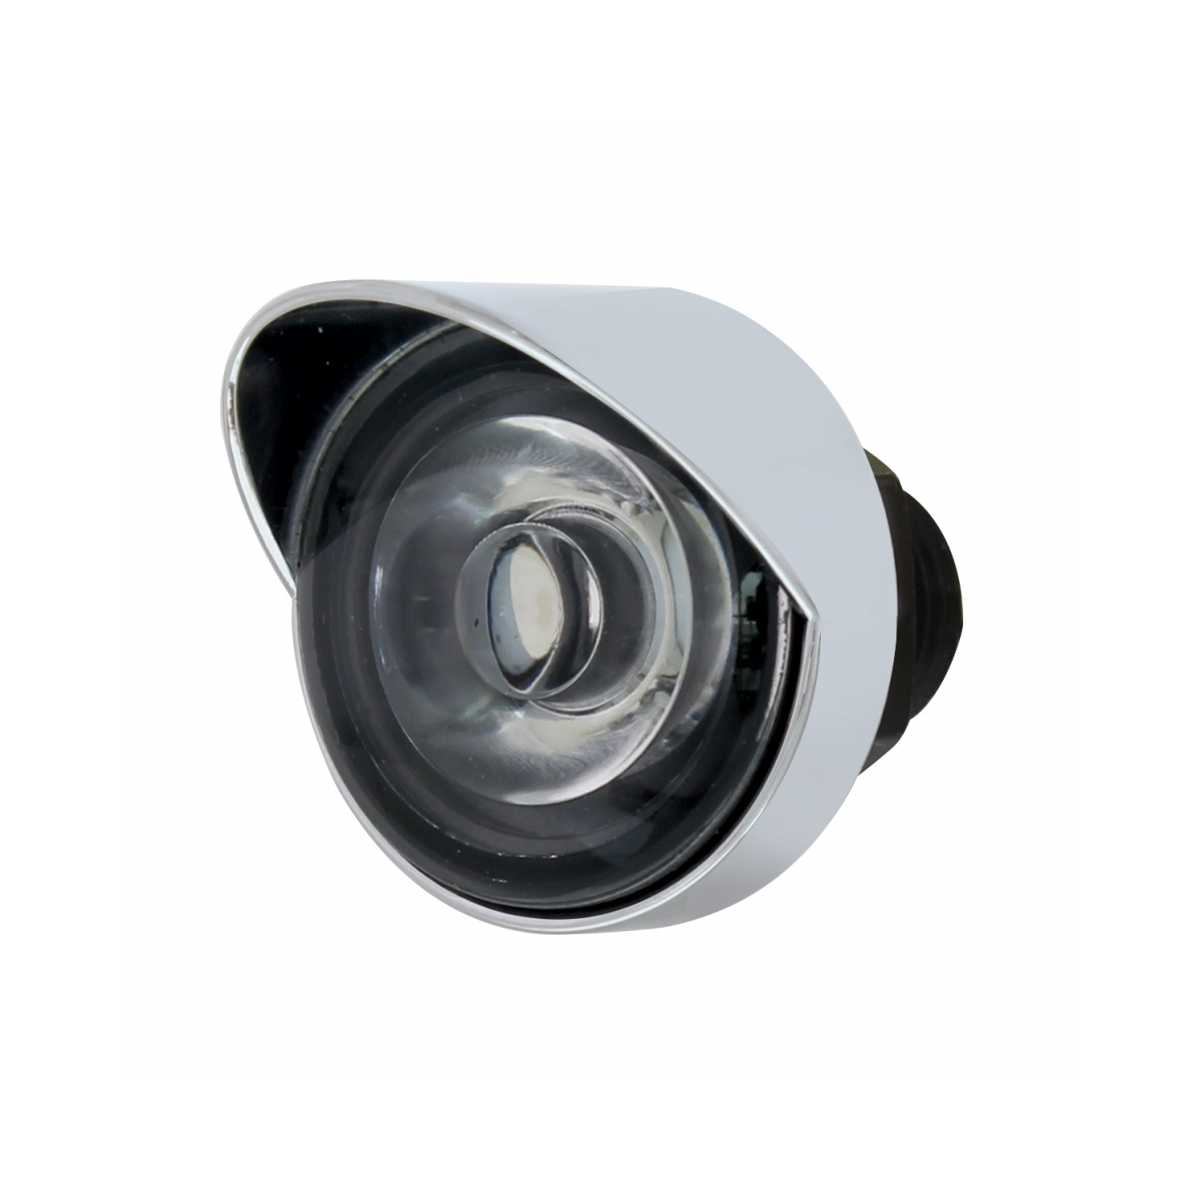 Peterbilt Air Cleaner Bracket w/ Mini Lights & Visors - Amber LED/Clear Lens